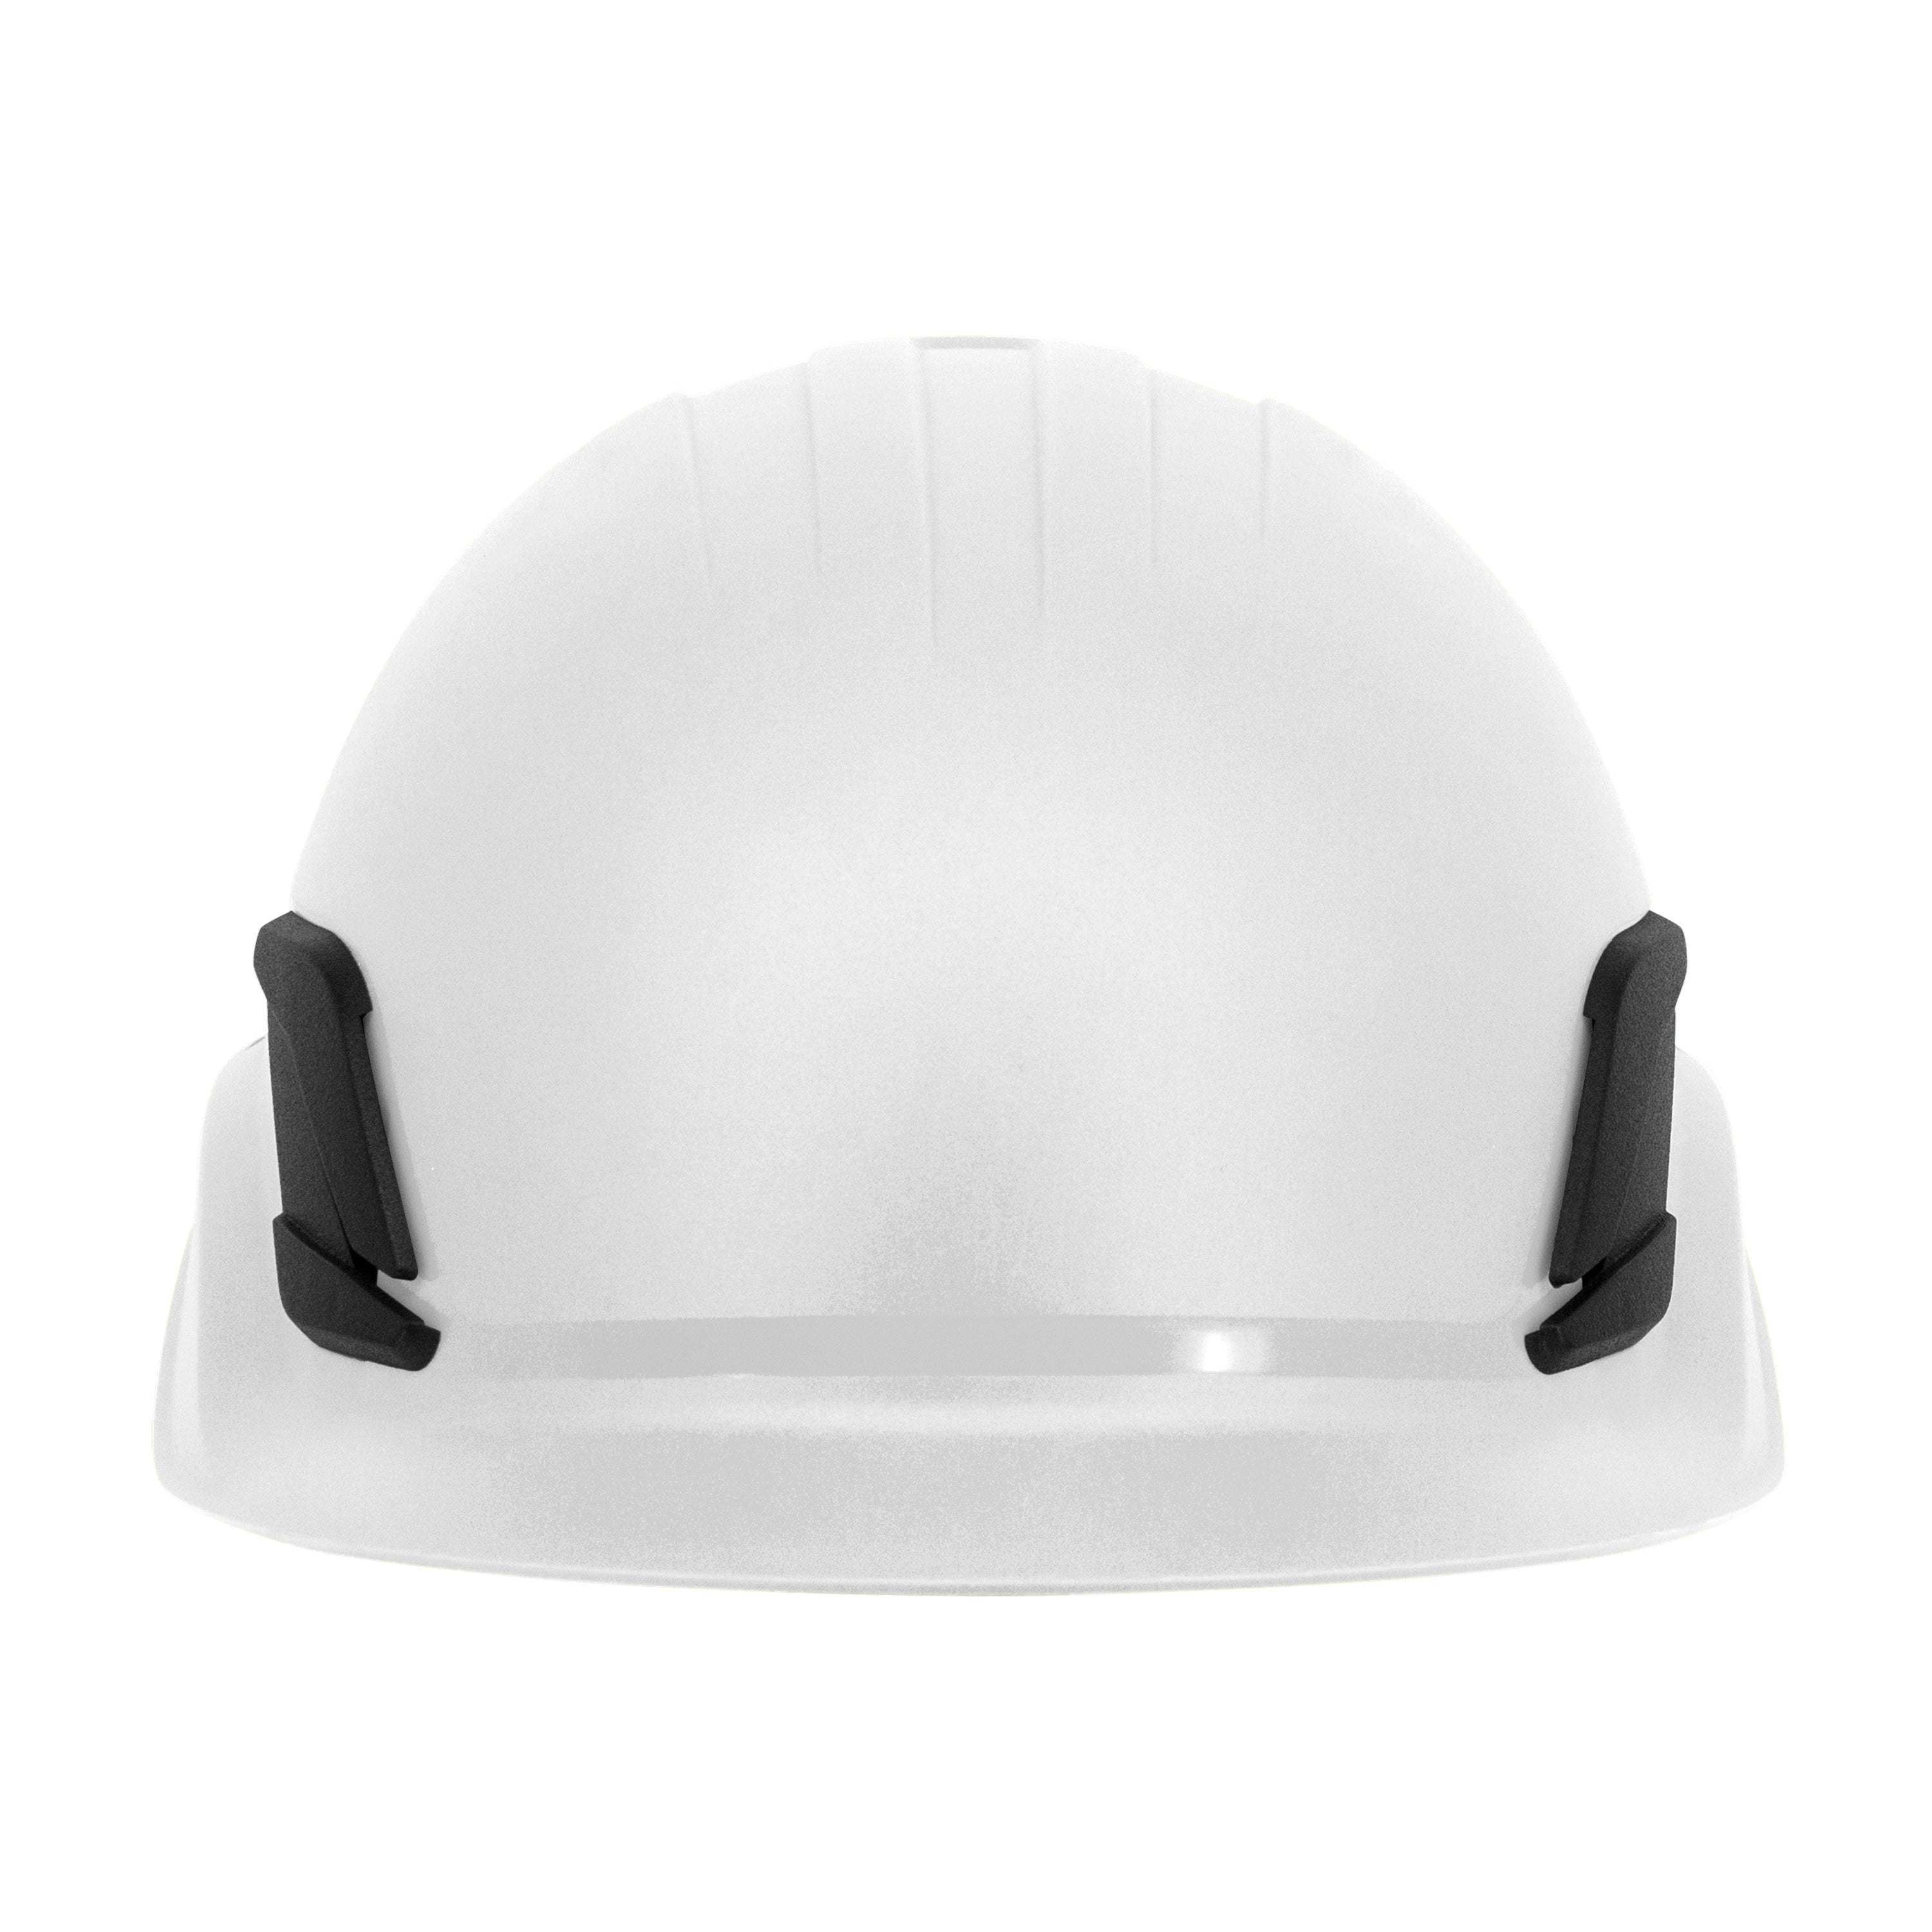 Casco estilo gorra de escalada de titanio - Blanco